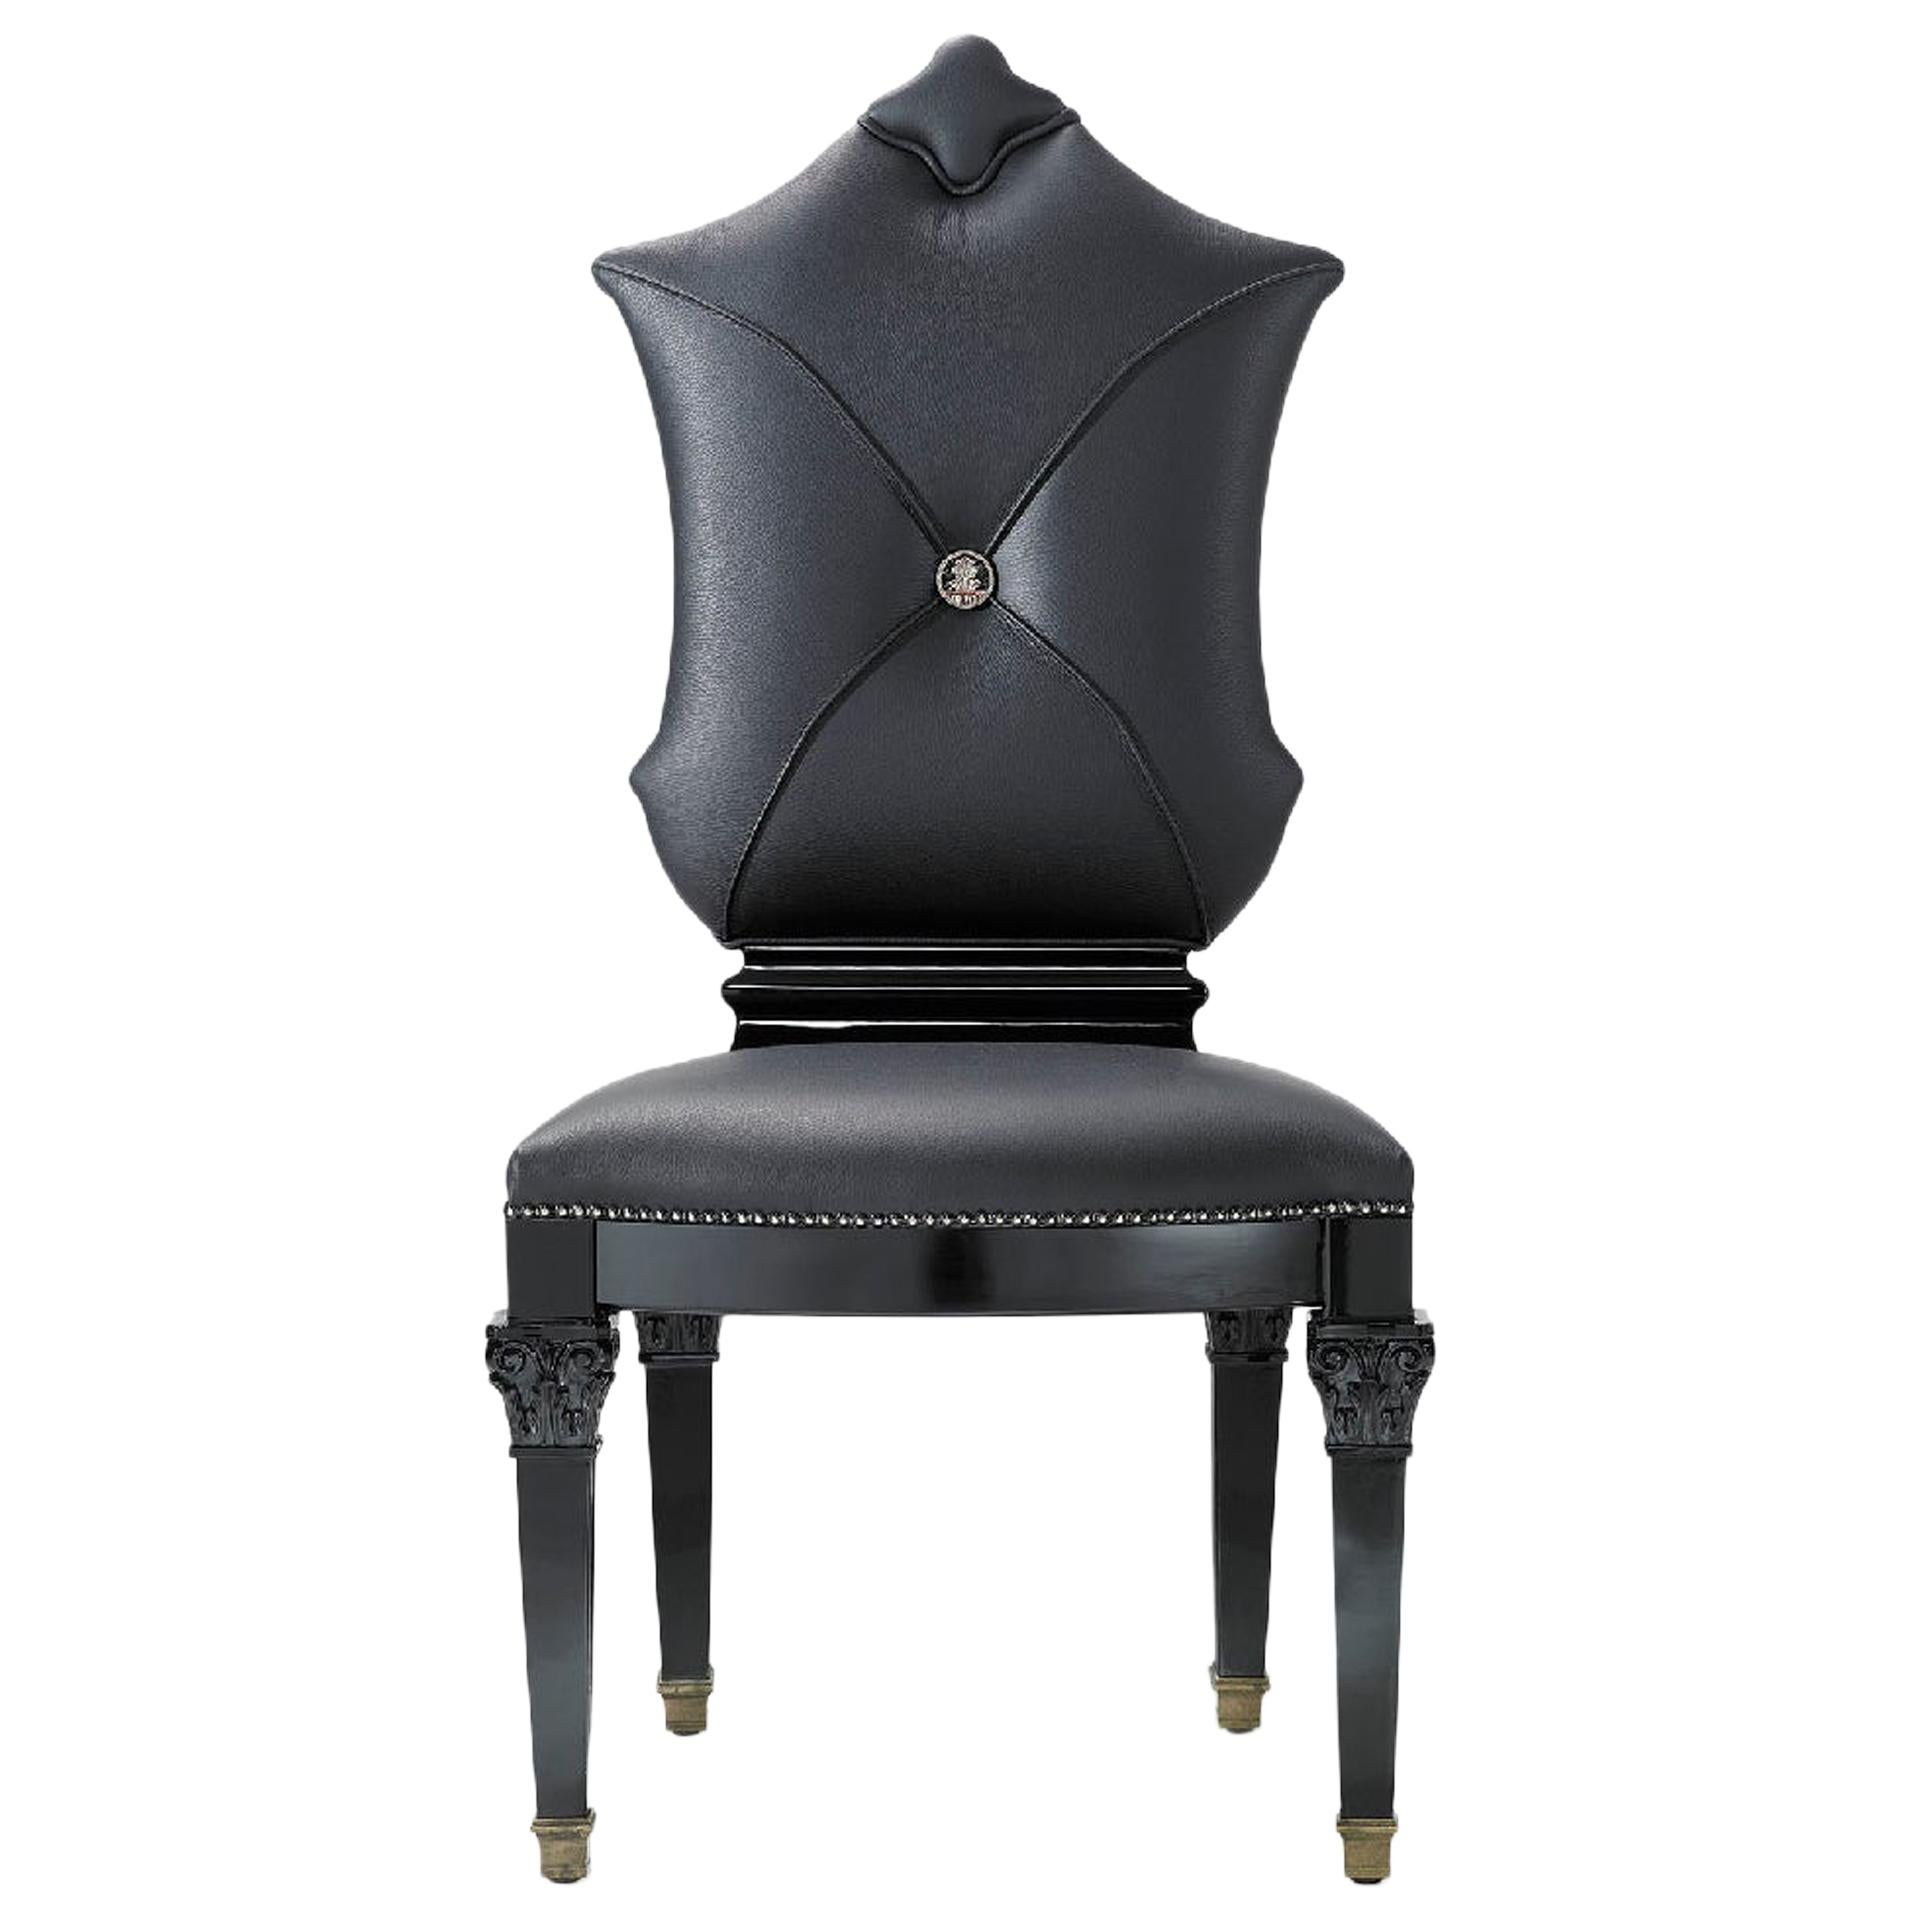 Chaise en bois massif sculpté Finition laquée noire Pieds dakénés Capuchons en cuir noir